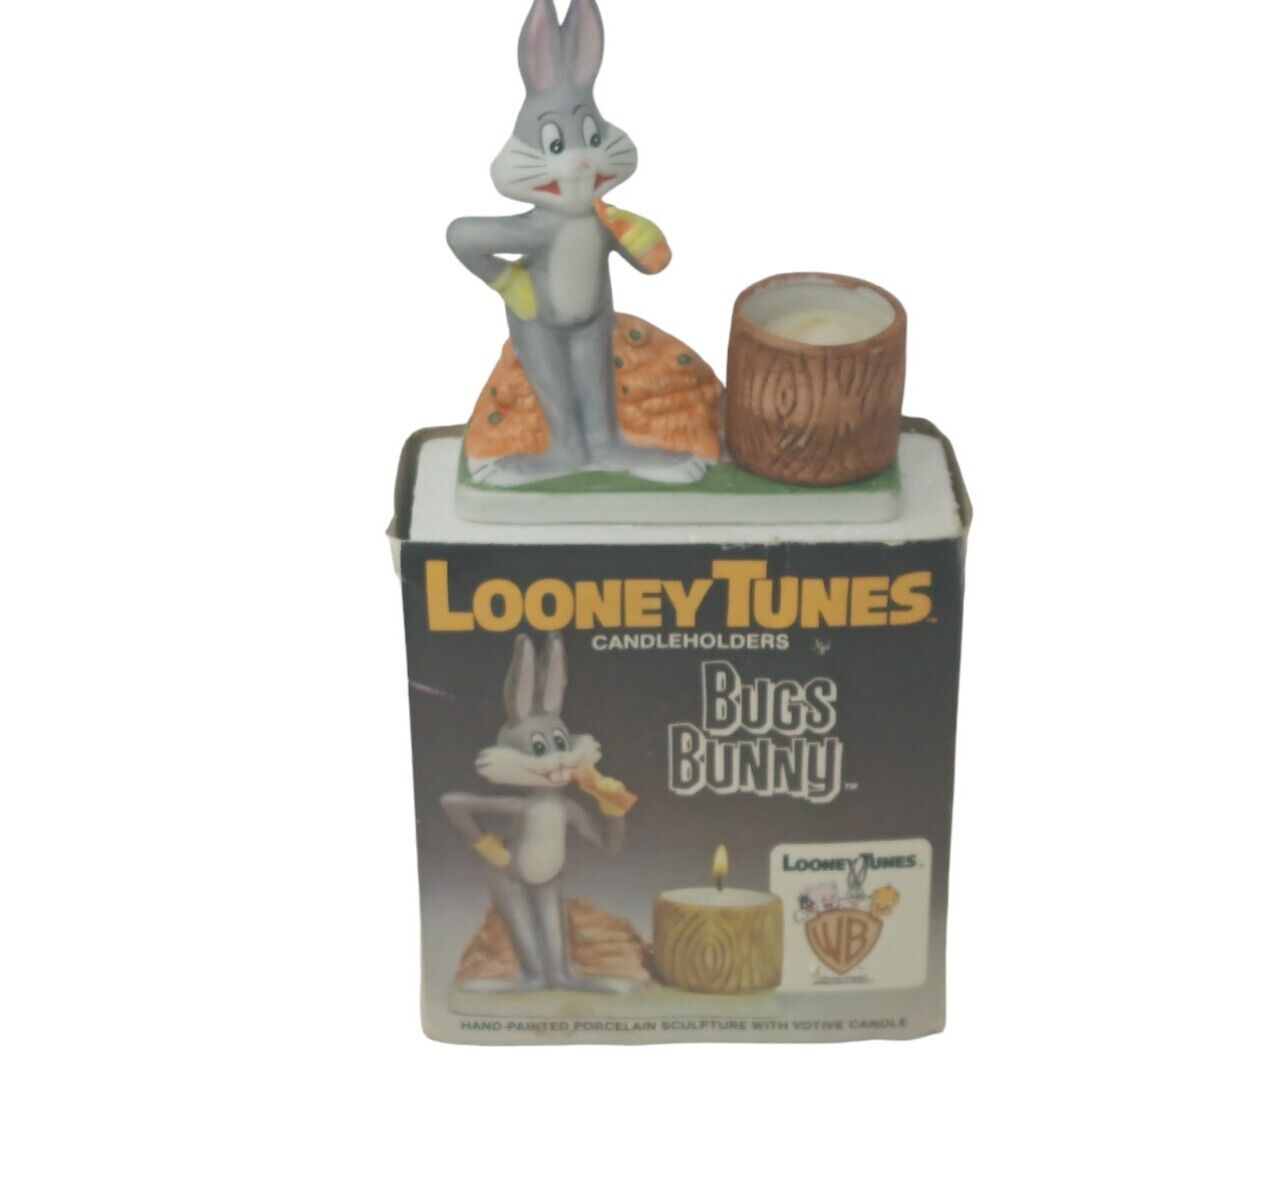 Looney Tunes Bugs Bunny Candle Holder Vintage 1980 Porcelain Warner Bros.